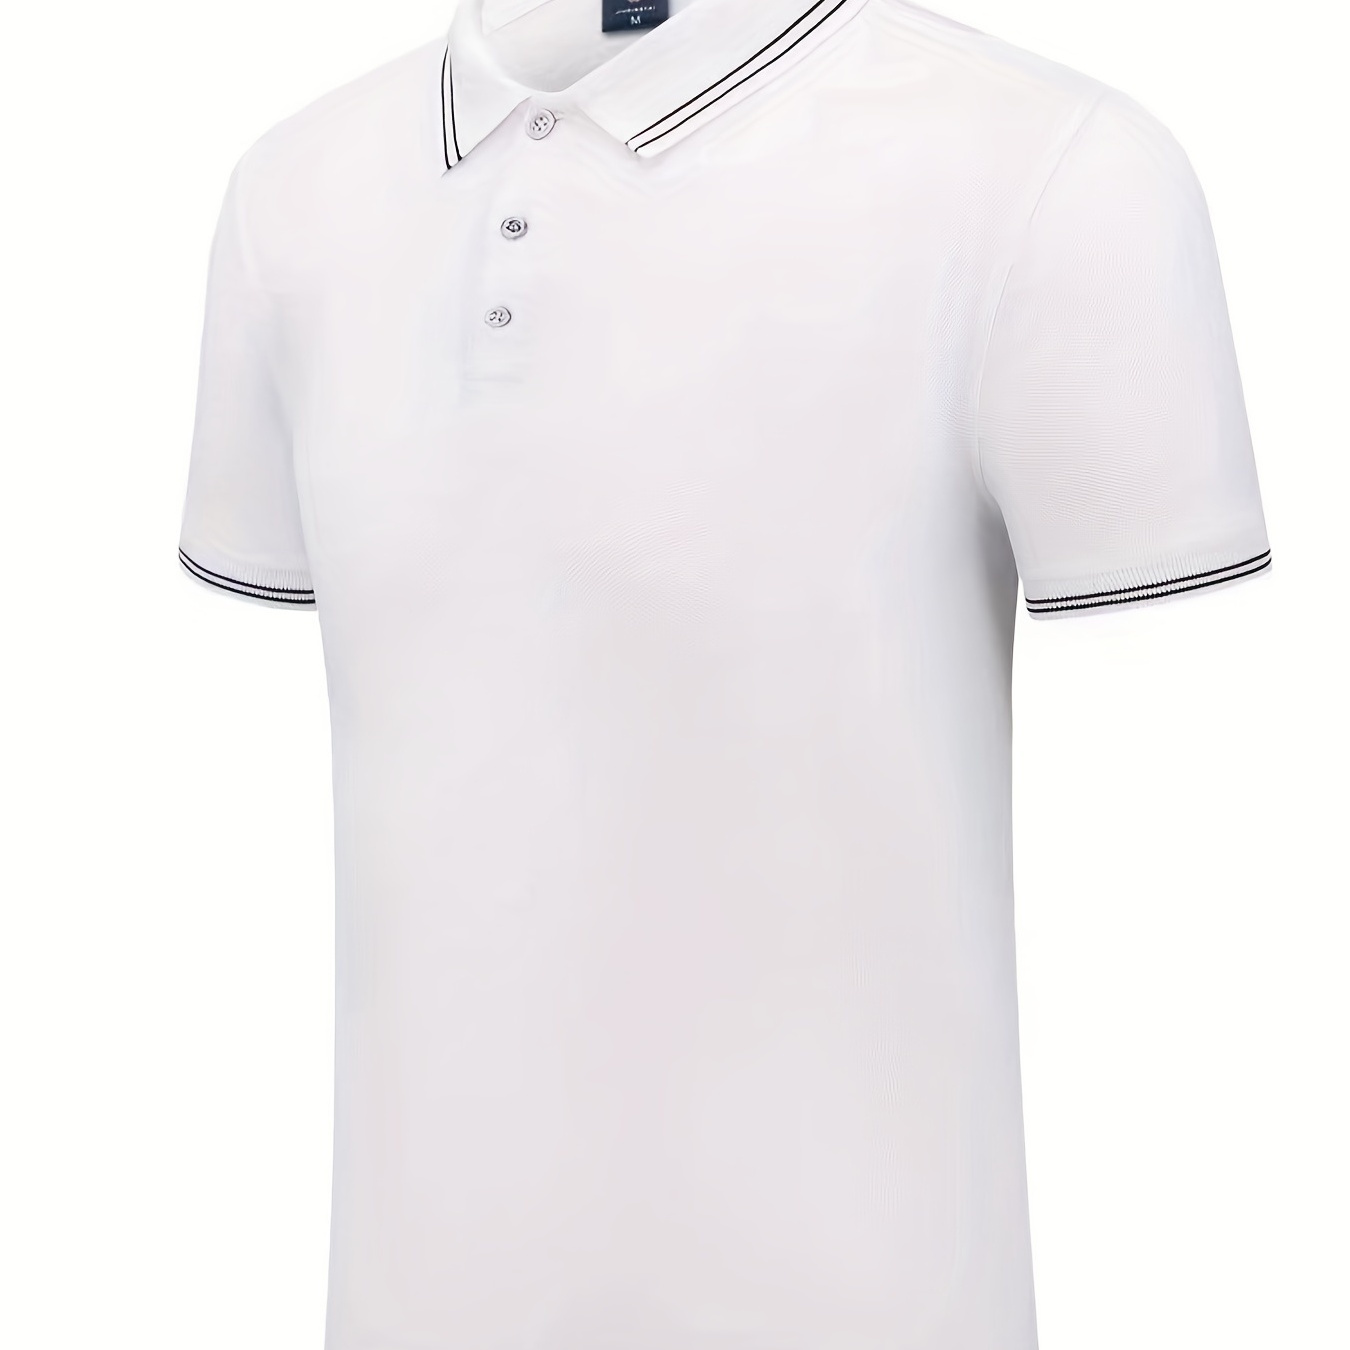 

Classic Design Men's Casual Short Sleeve Lightweight Lapel Shirt, Summer Golf Sports